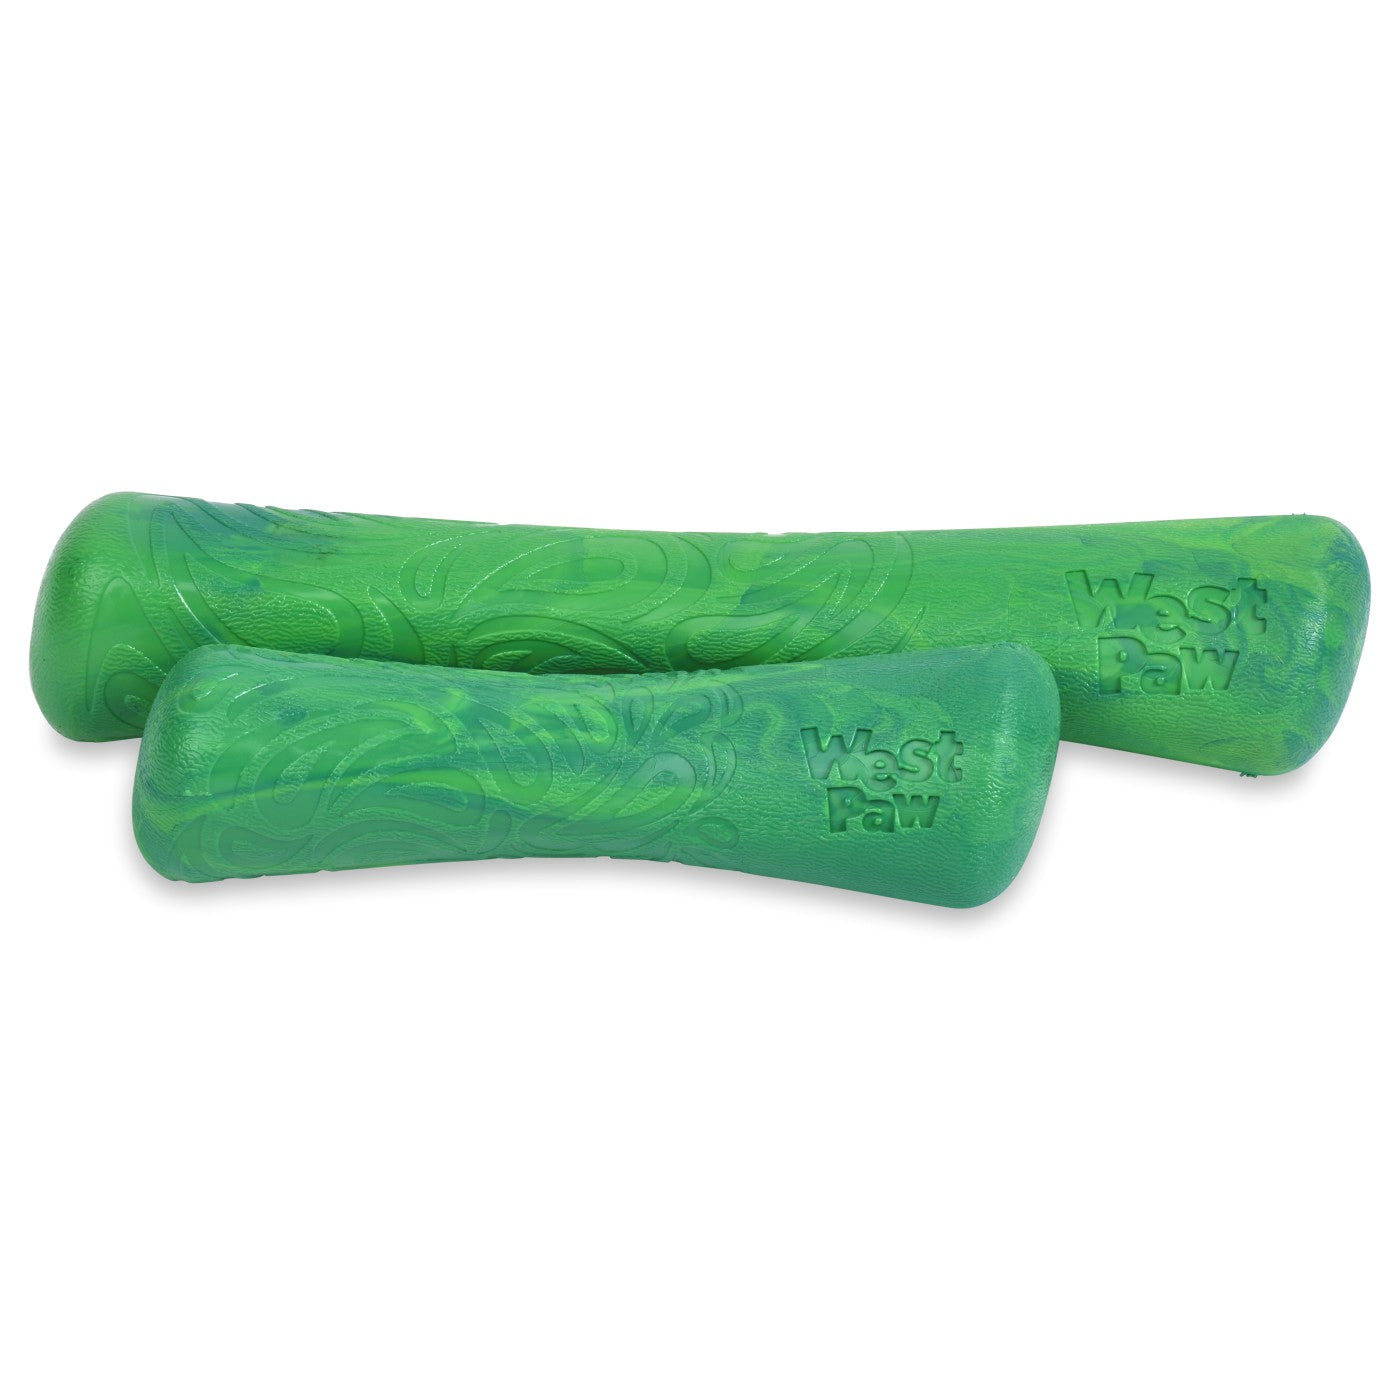 West Paw Seaflex Recycled Plastic Fetch Dog Toy - Drifty - Emerald